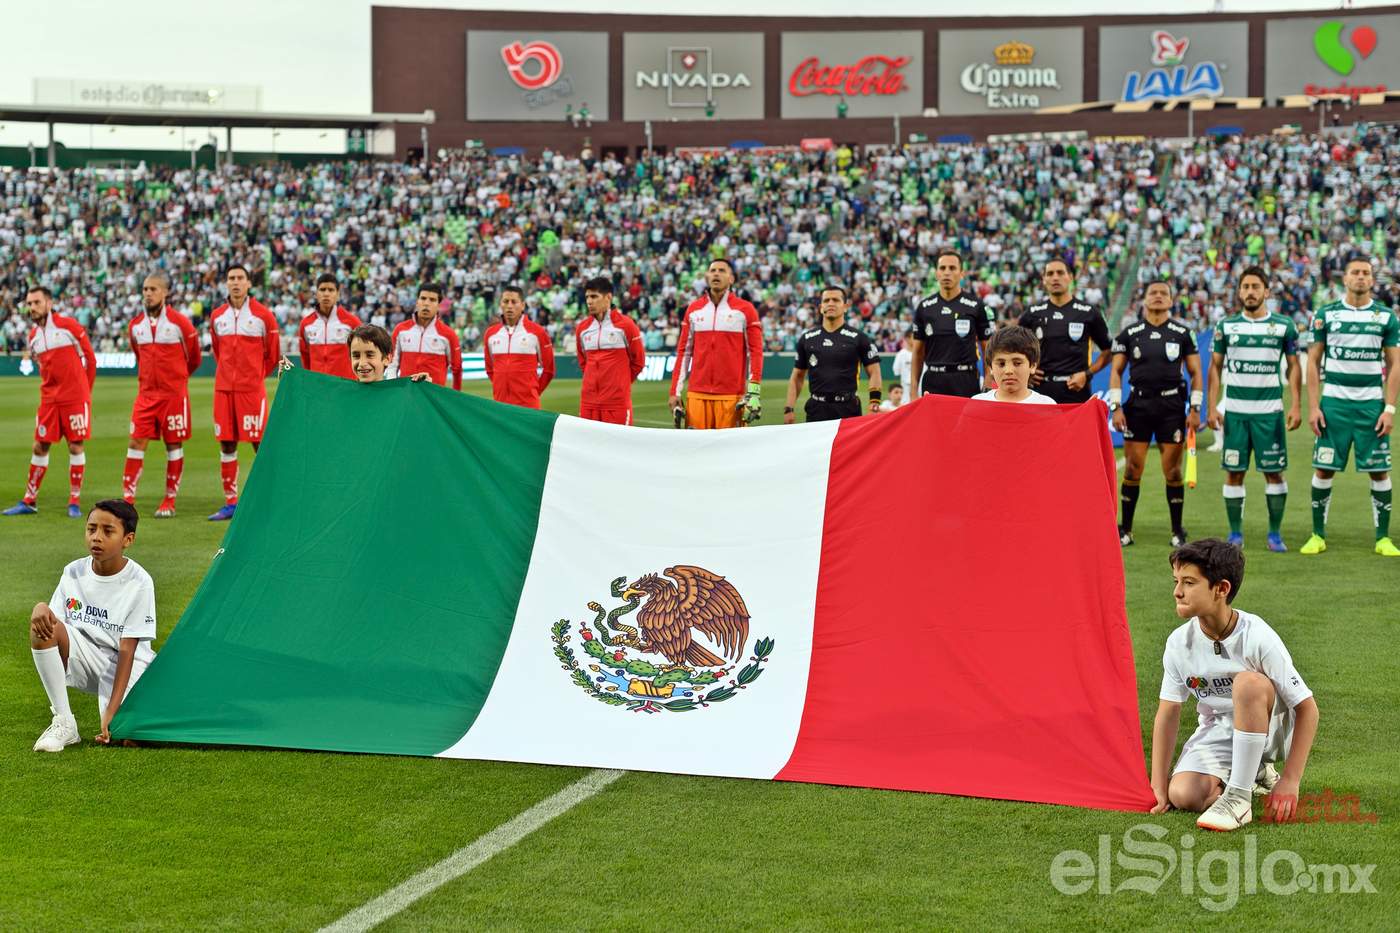 Ayer se celebró el Día de la Bandera en México, por lo que el lábaro patrio estuvo presente en el campo del Estadio Corona. (Jorge Martínez)